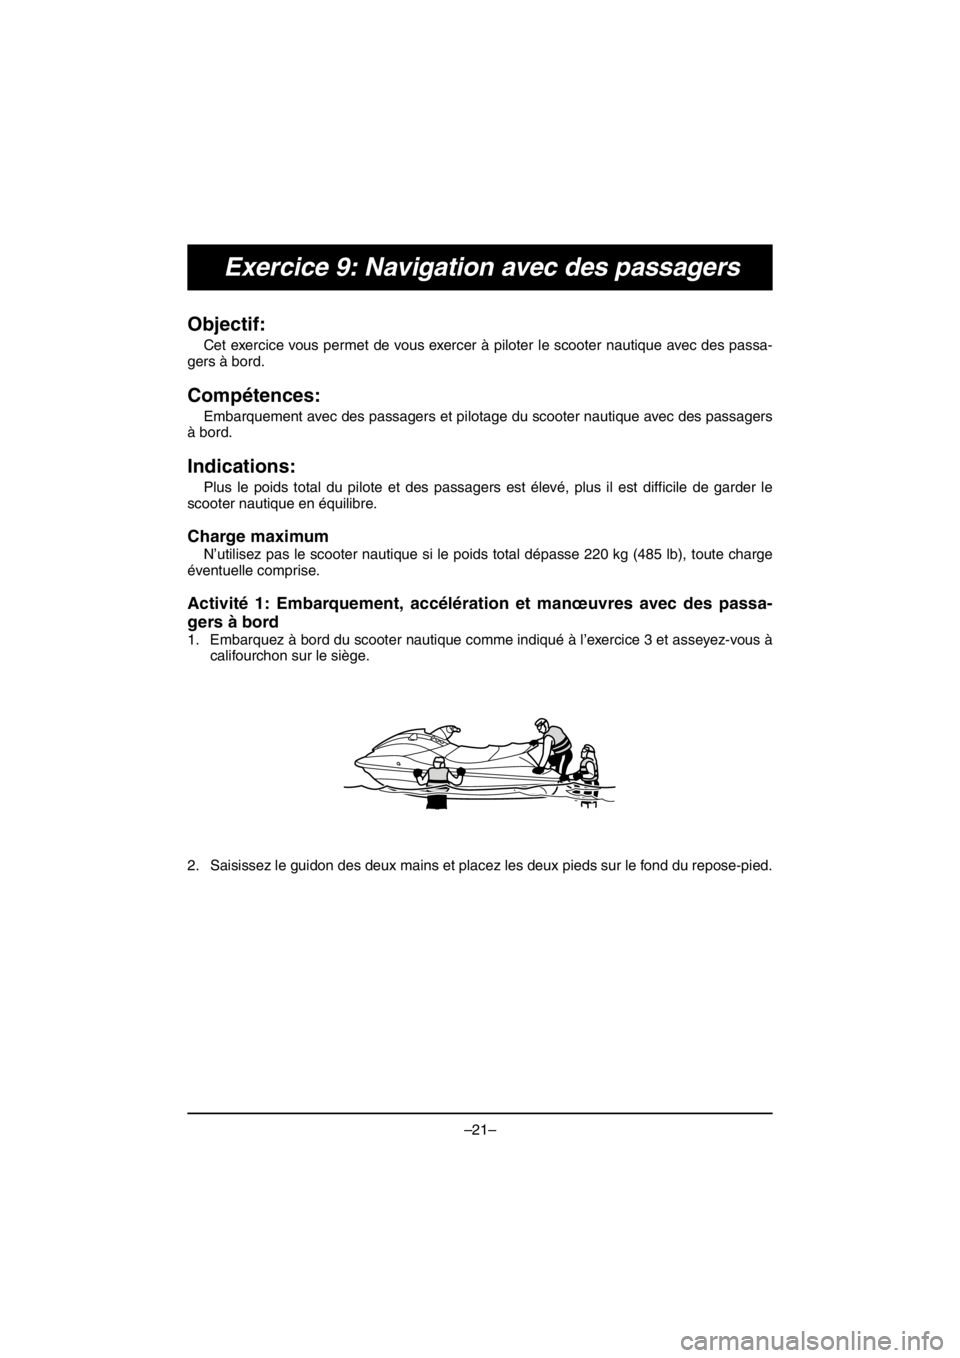 YAMAHA EX SPORT 2017  Manuale duso (in Italian) –21–
Exercice 9: Navigation avec des passagers
Objectif: 
Cet exercice vous permet de vous exercer à piloter le scooter nautique avec des passa-
gers à bord.
Compétences: 
Embarquement avec des